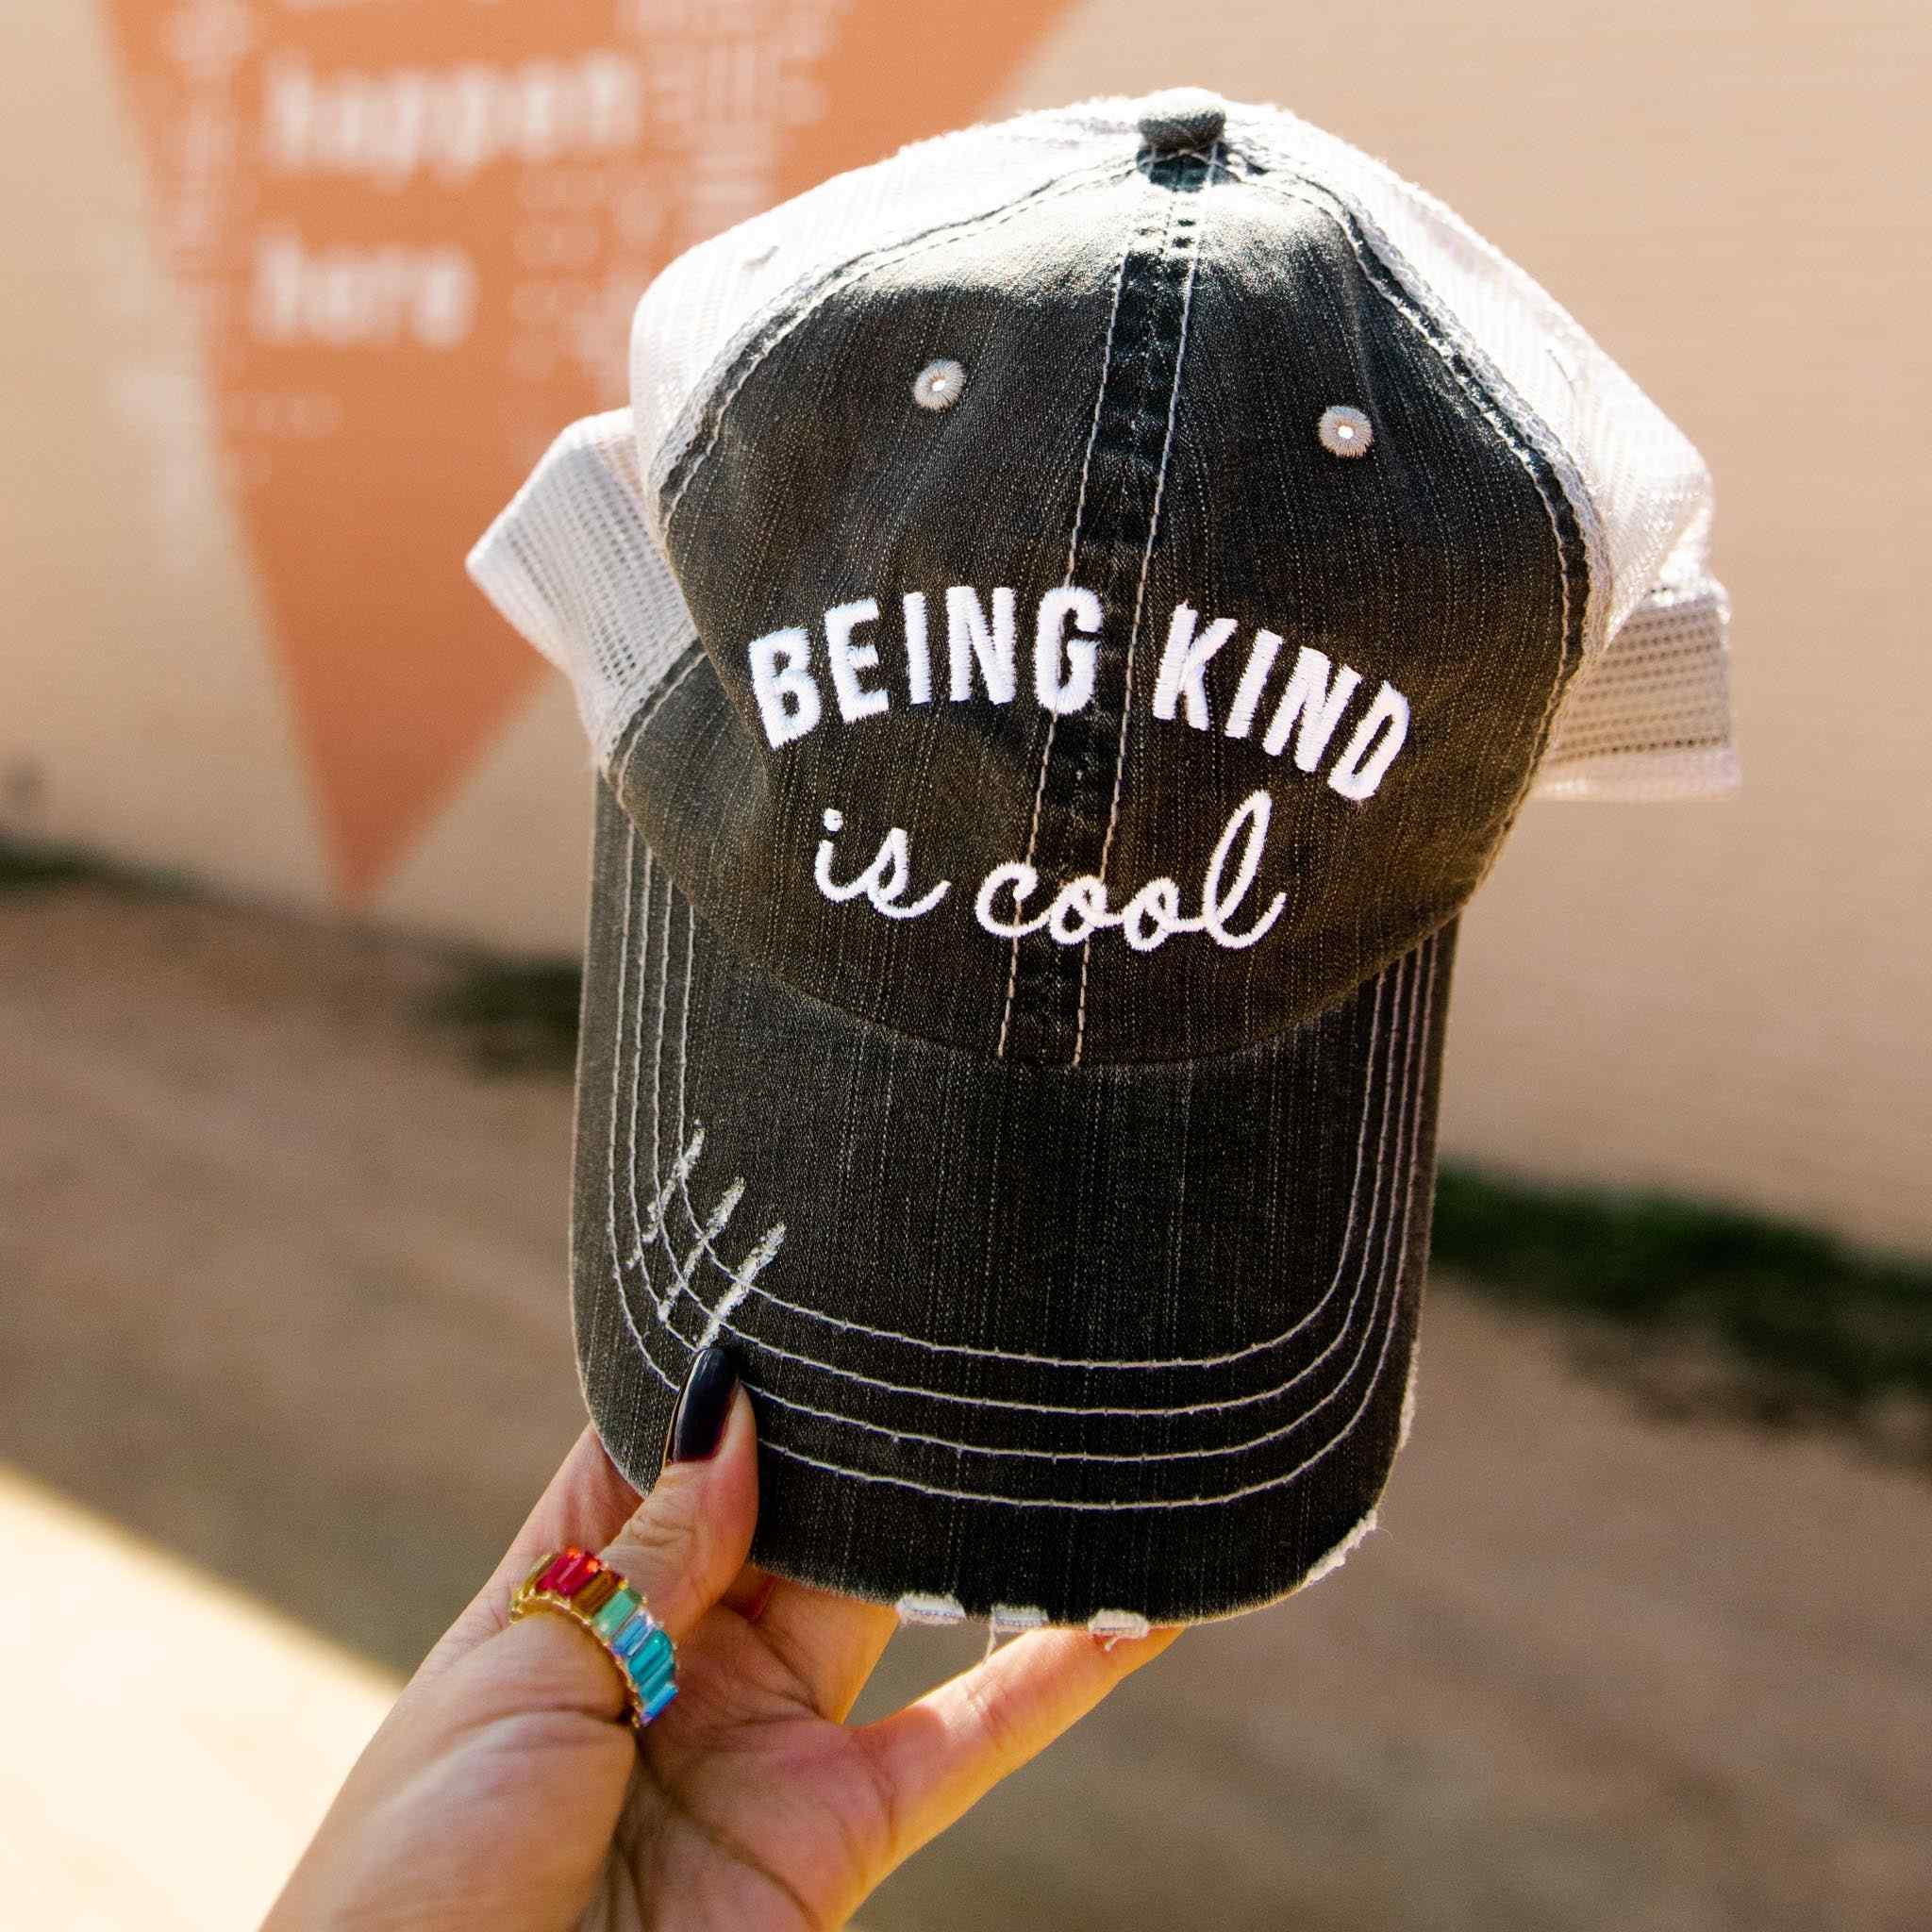 Being Kind Is Cool Women's Trucker Hat